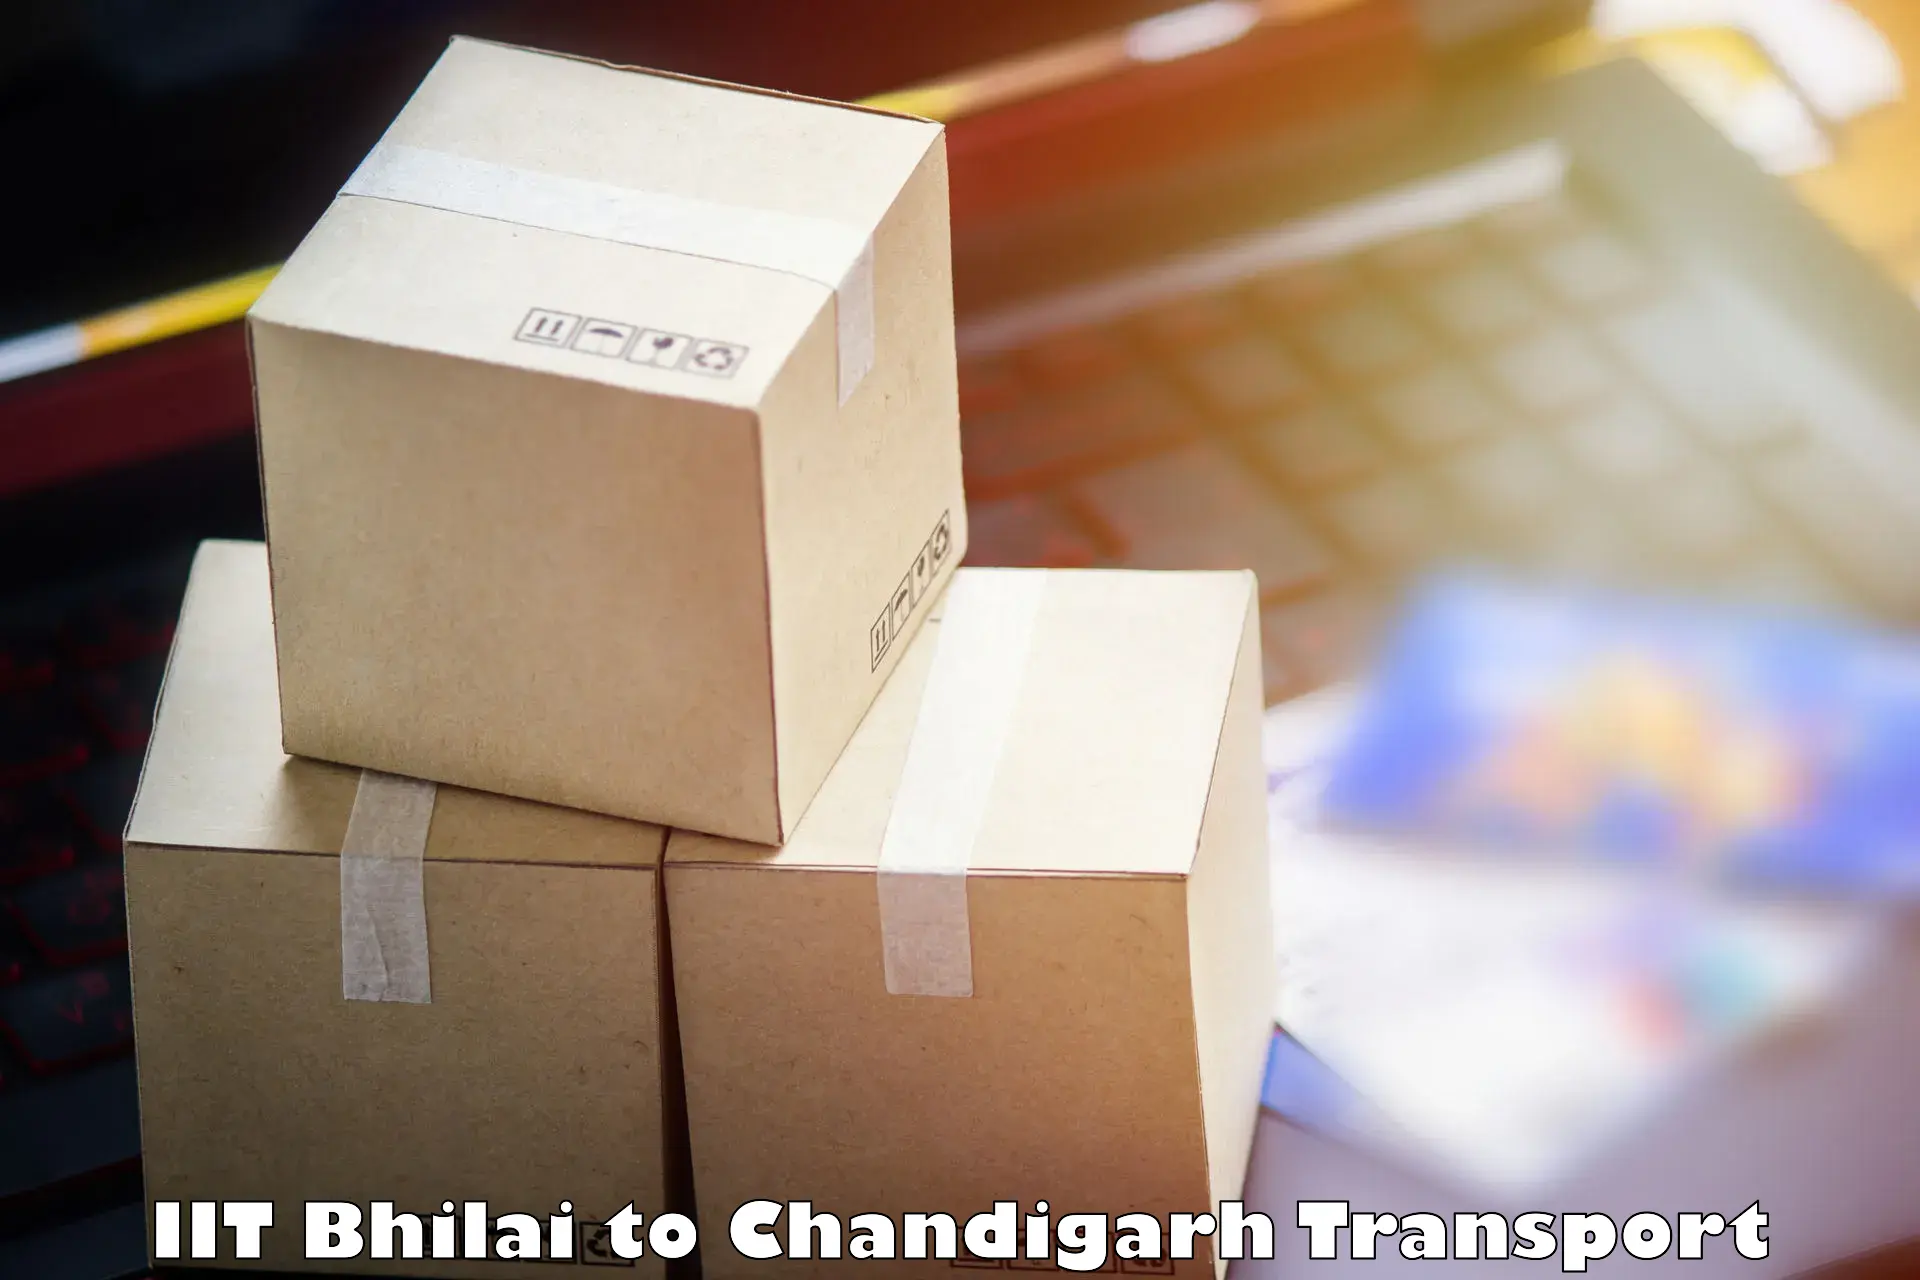 Online transport service IIT Bhilai to Chandigarh